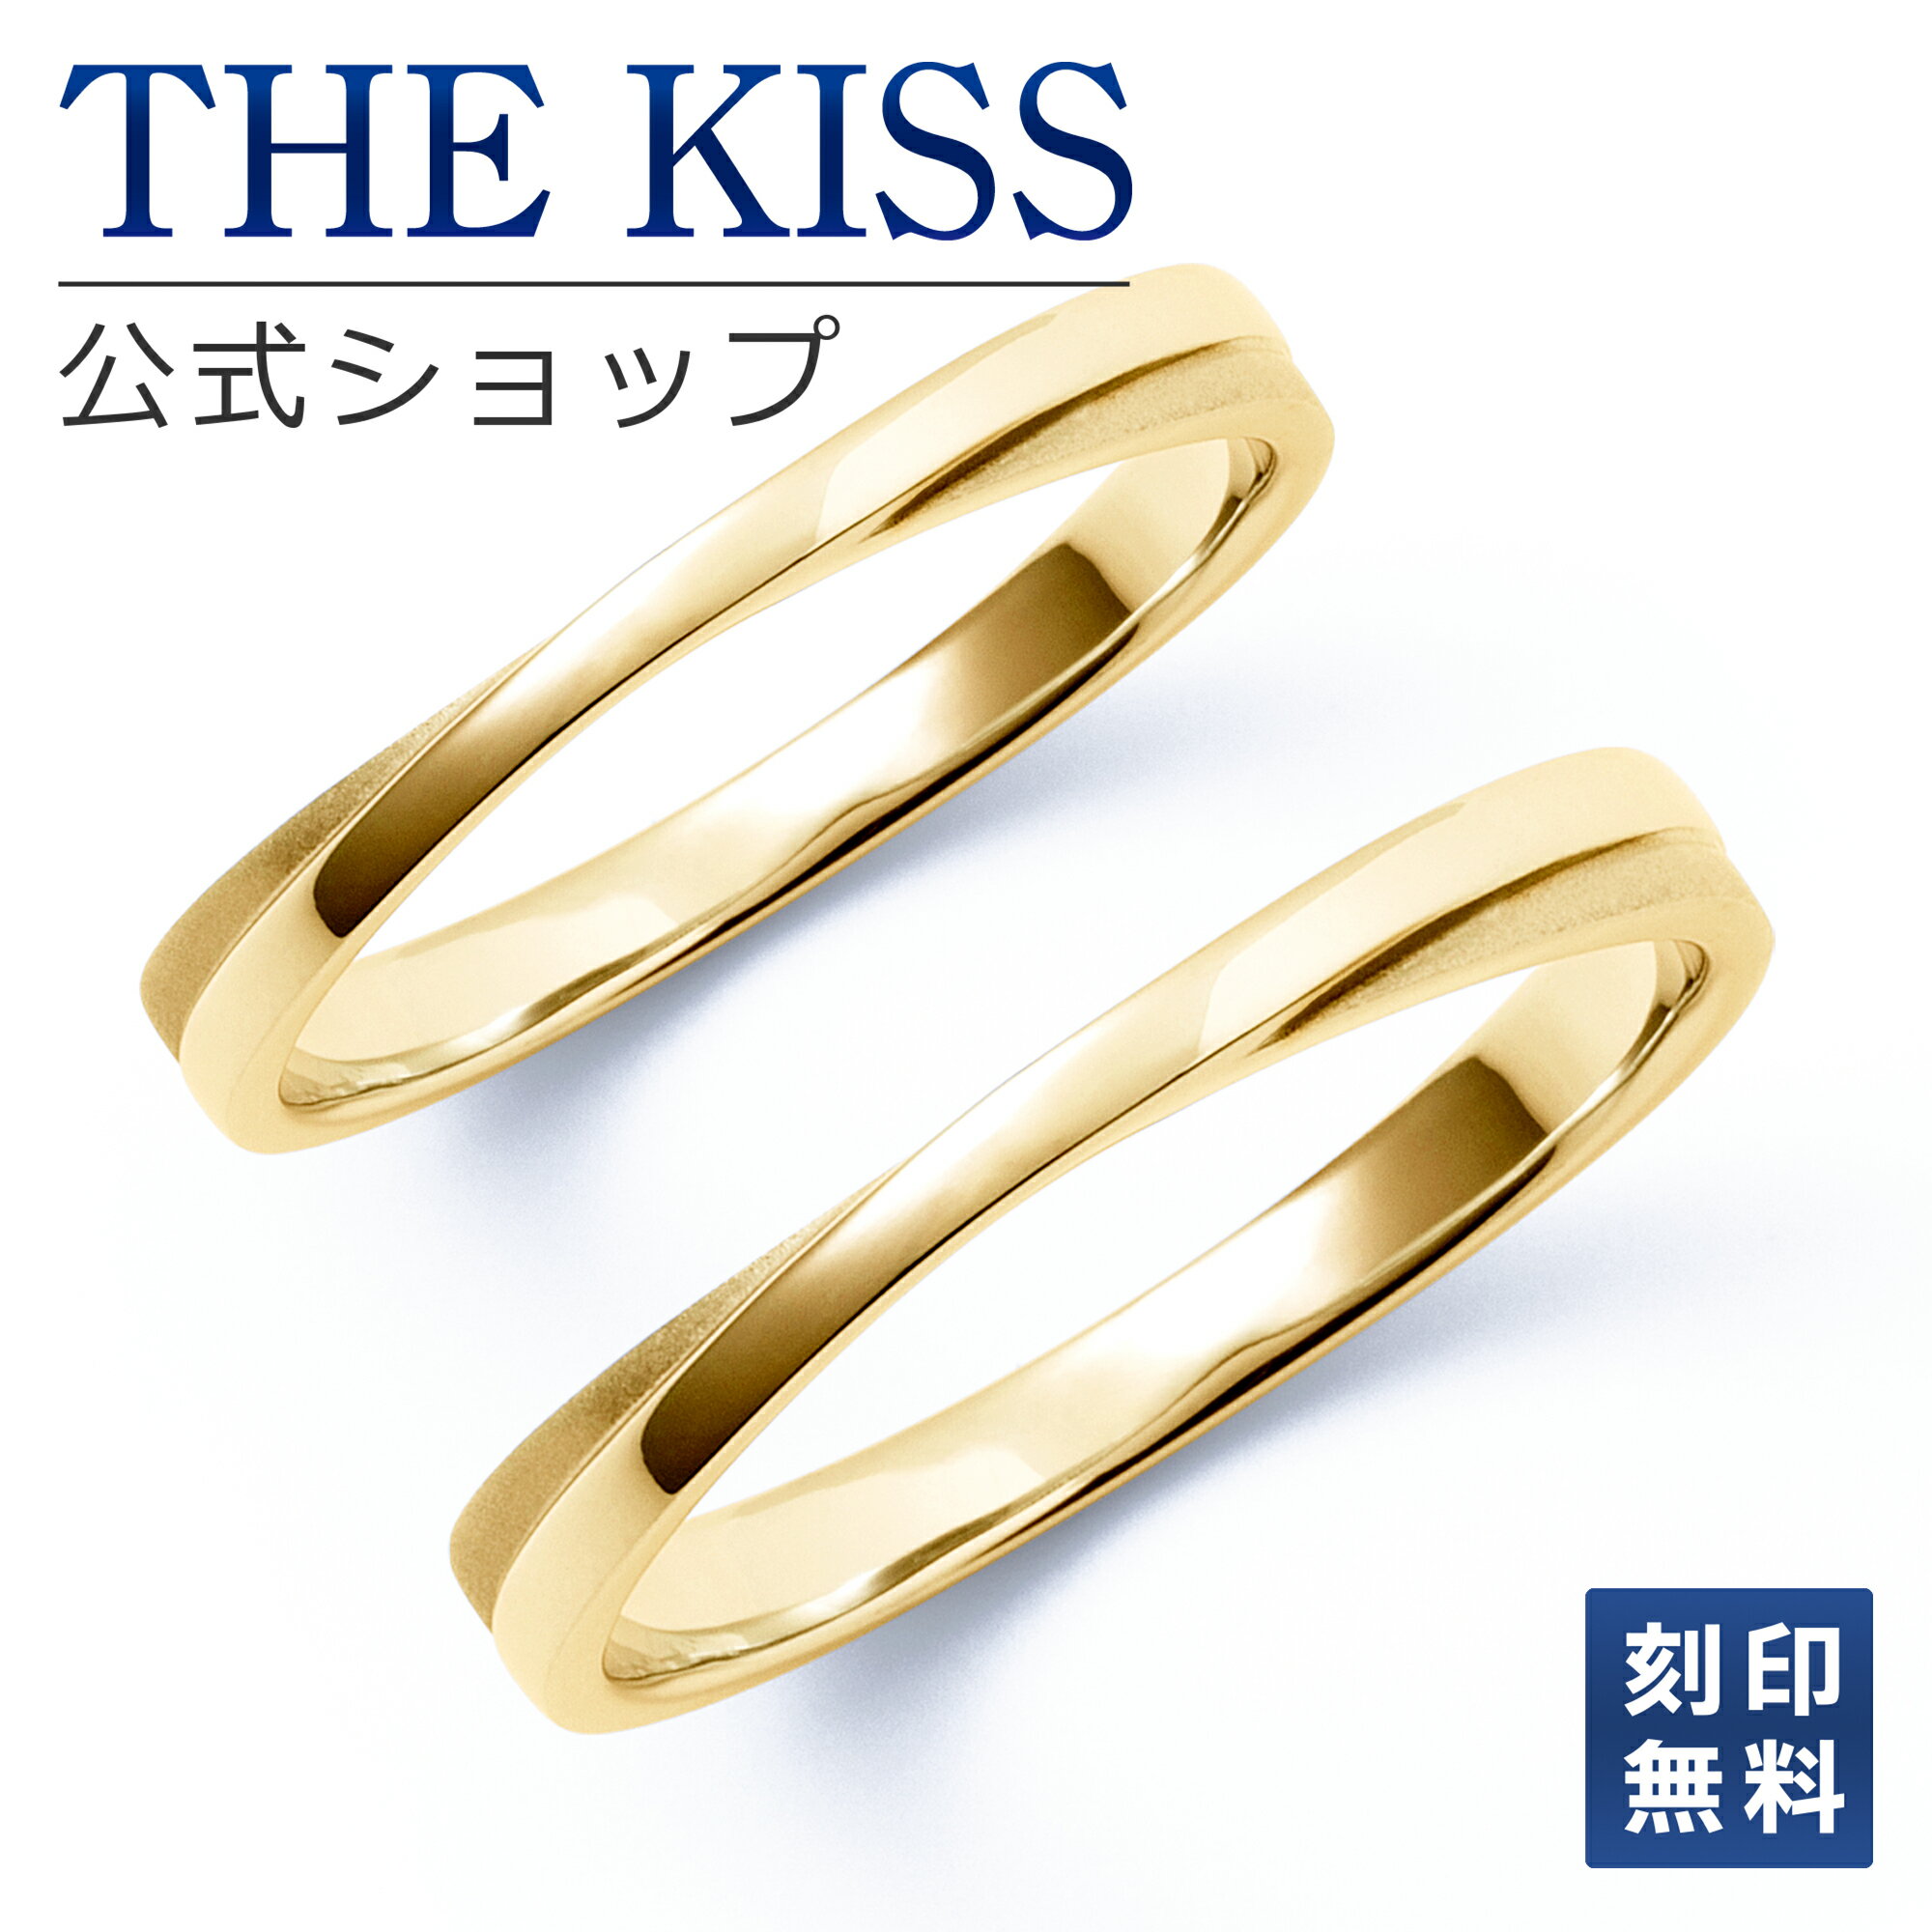 【ラッピング無料】THE KISS 公式ショップ K10ゴールド 結婚指輪 マリッジリング ペアリング ペアアクセサリー カップル 人気 ジュエリーブランド THEKISS ペア 指輪 ORDER-K-R451YG-P セット シンプル 細身 男性 女性 2個セット クリスマス